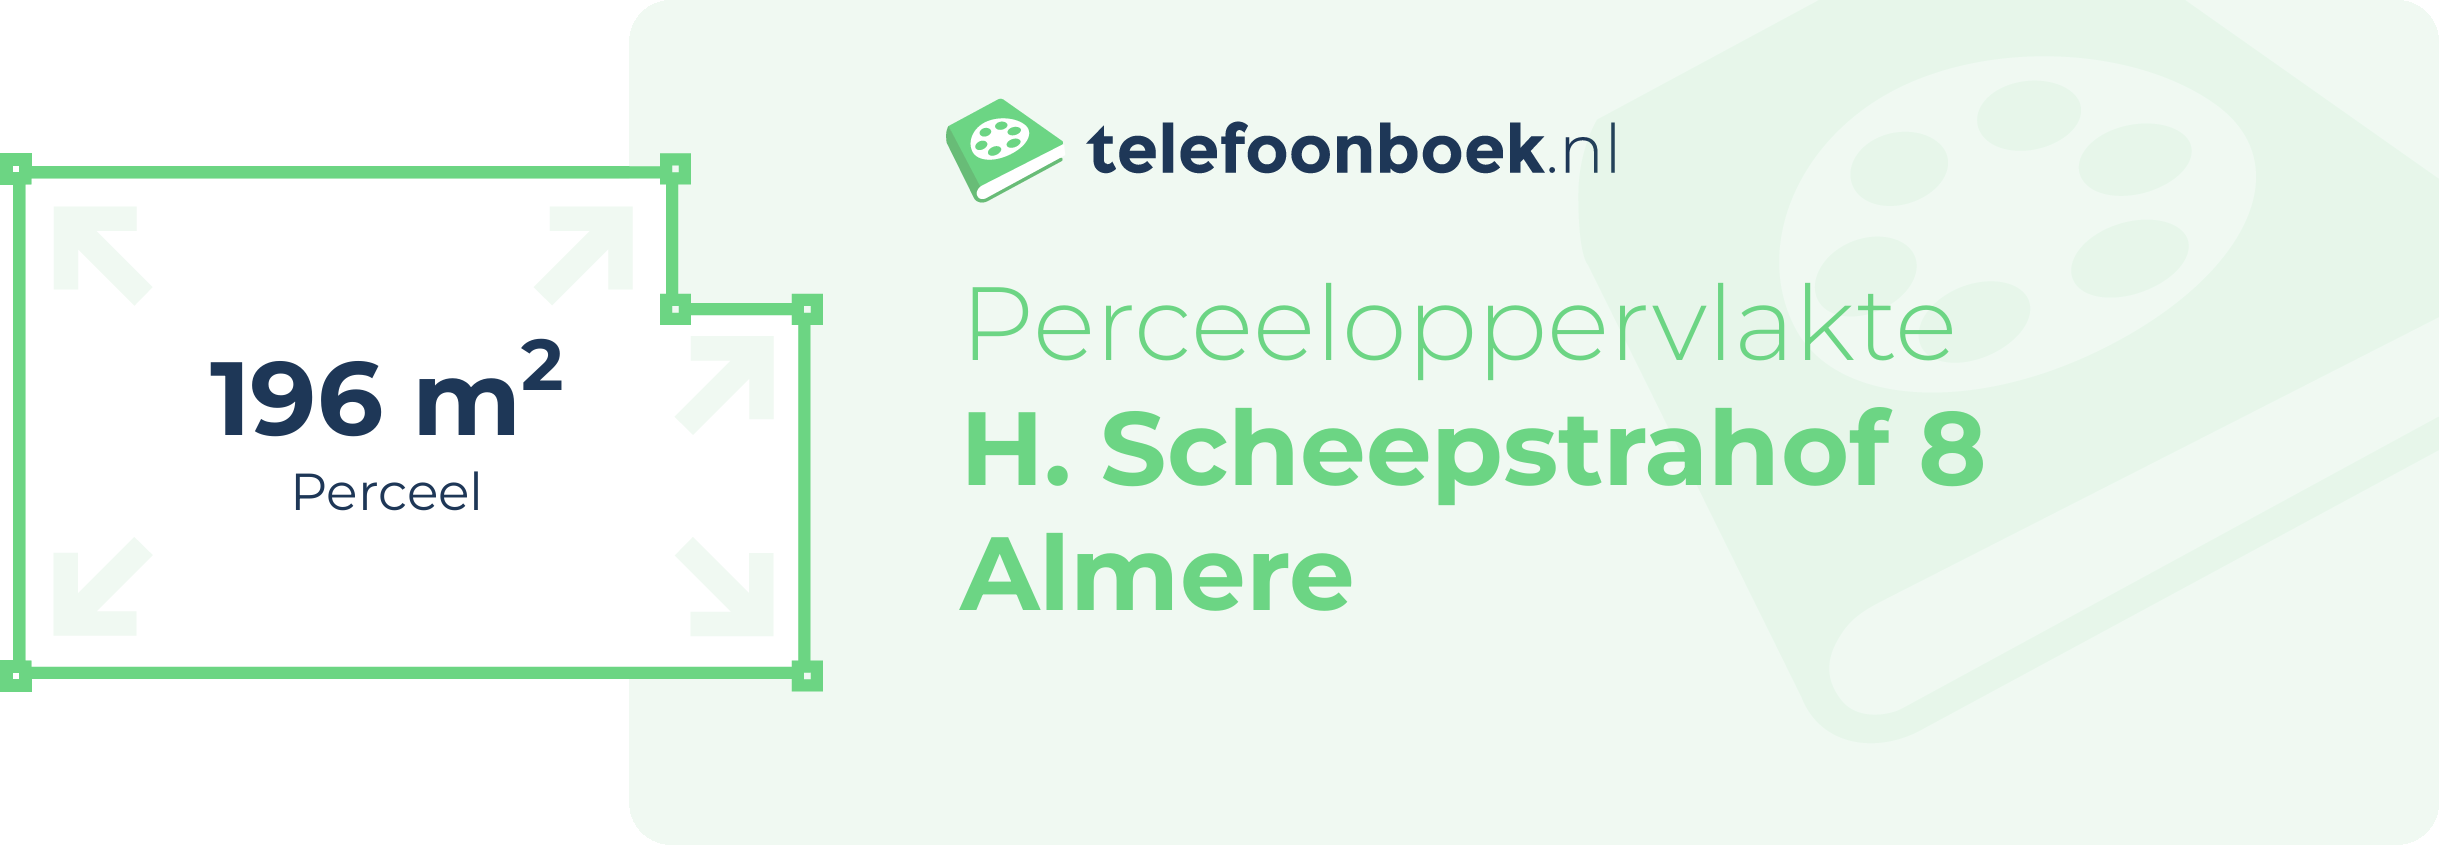 Perceeloppervlakte H. Scheepstrahof 8 Almere